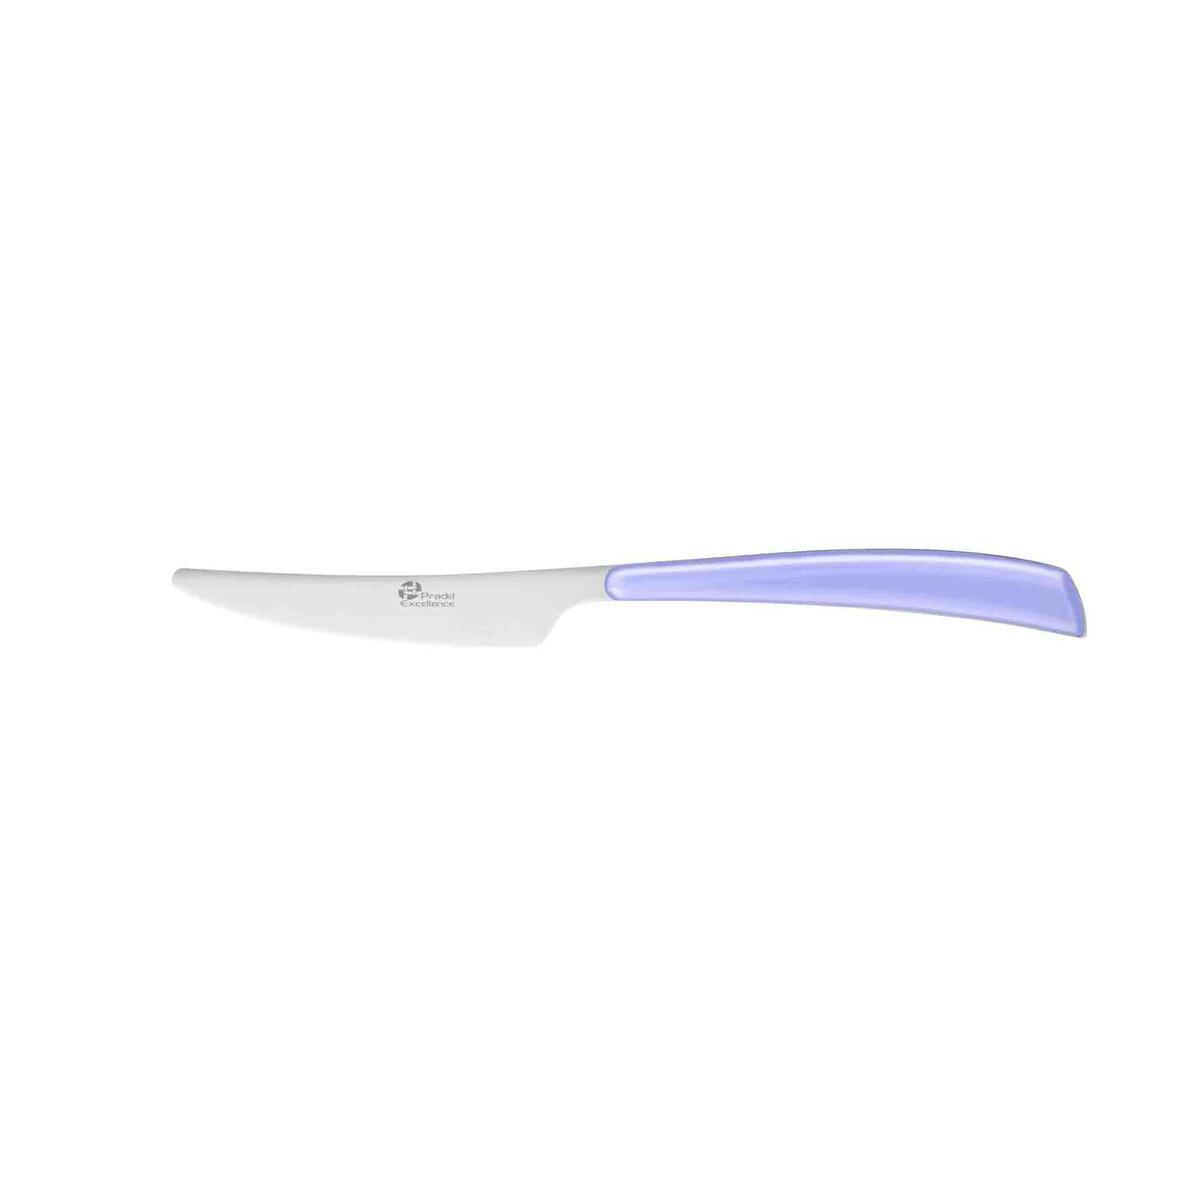 Couteau élégance lilas - Acier inoxydable - 23,4 cm - Violet